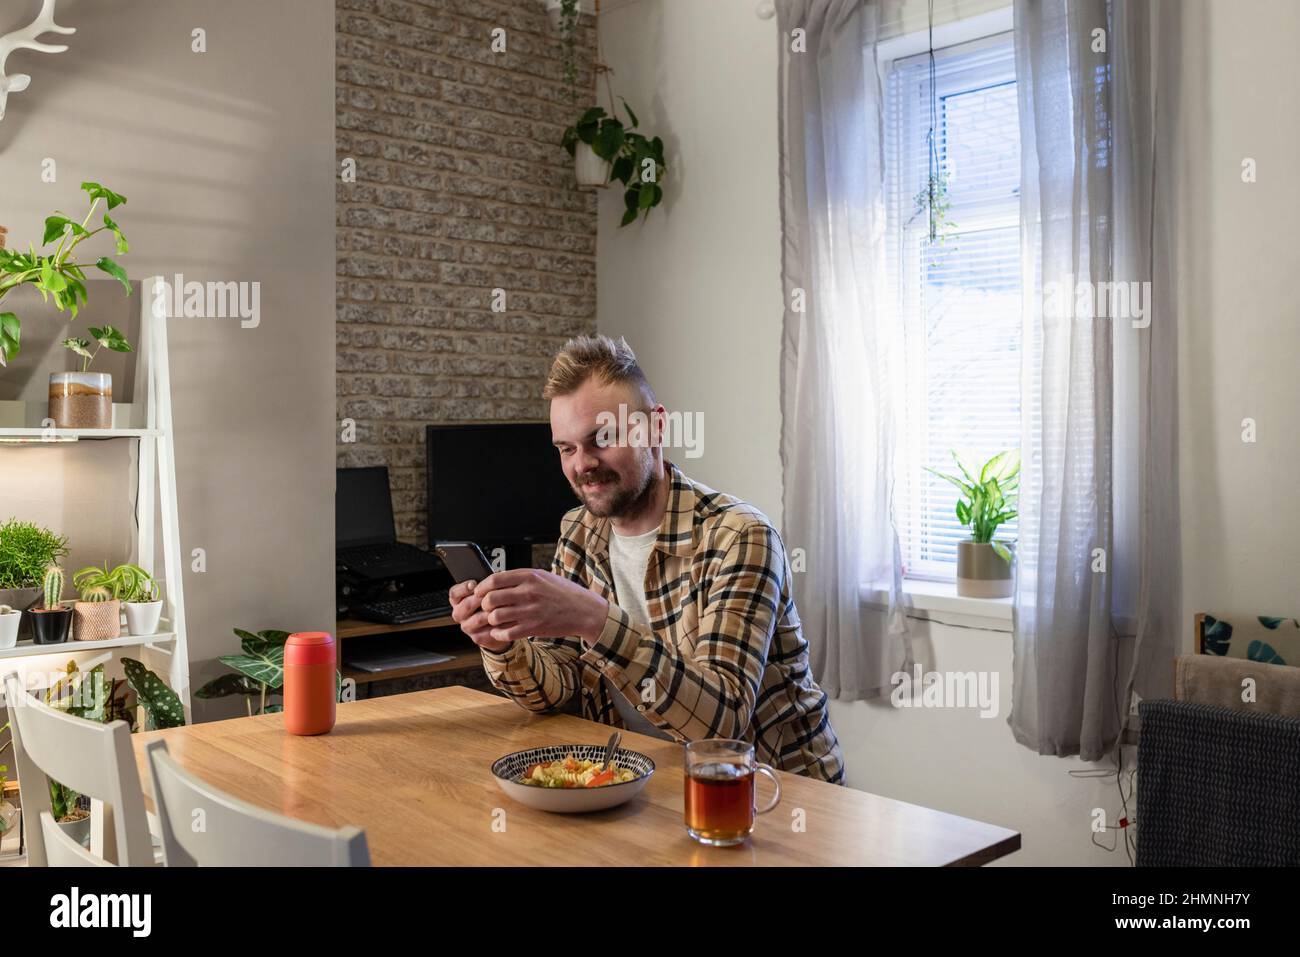 Vue latérale d'un jeune homme assis à une table dans son salon relaxant, il utilise son smartphone et il a une assiette de pâtes à proximité. Banque D'Images